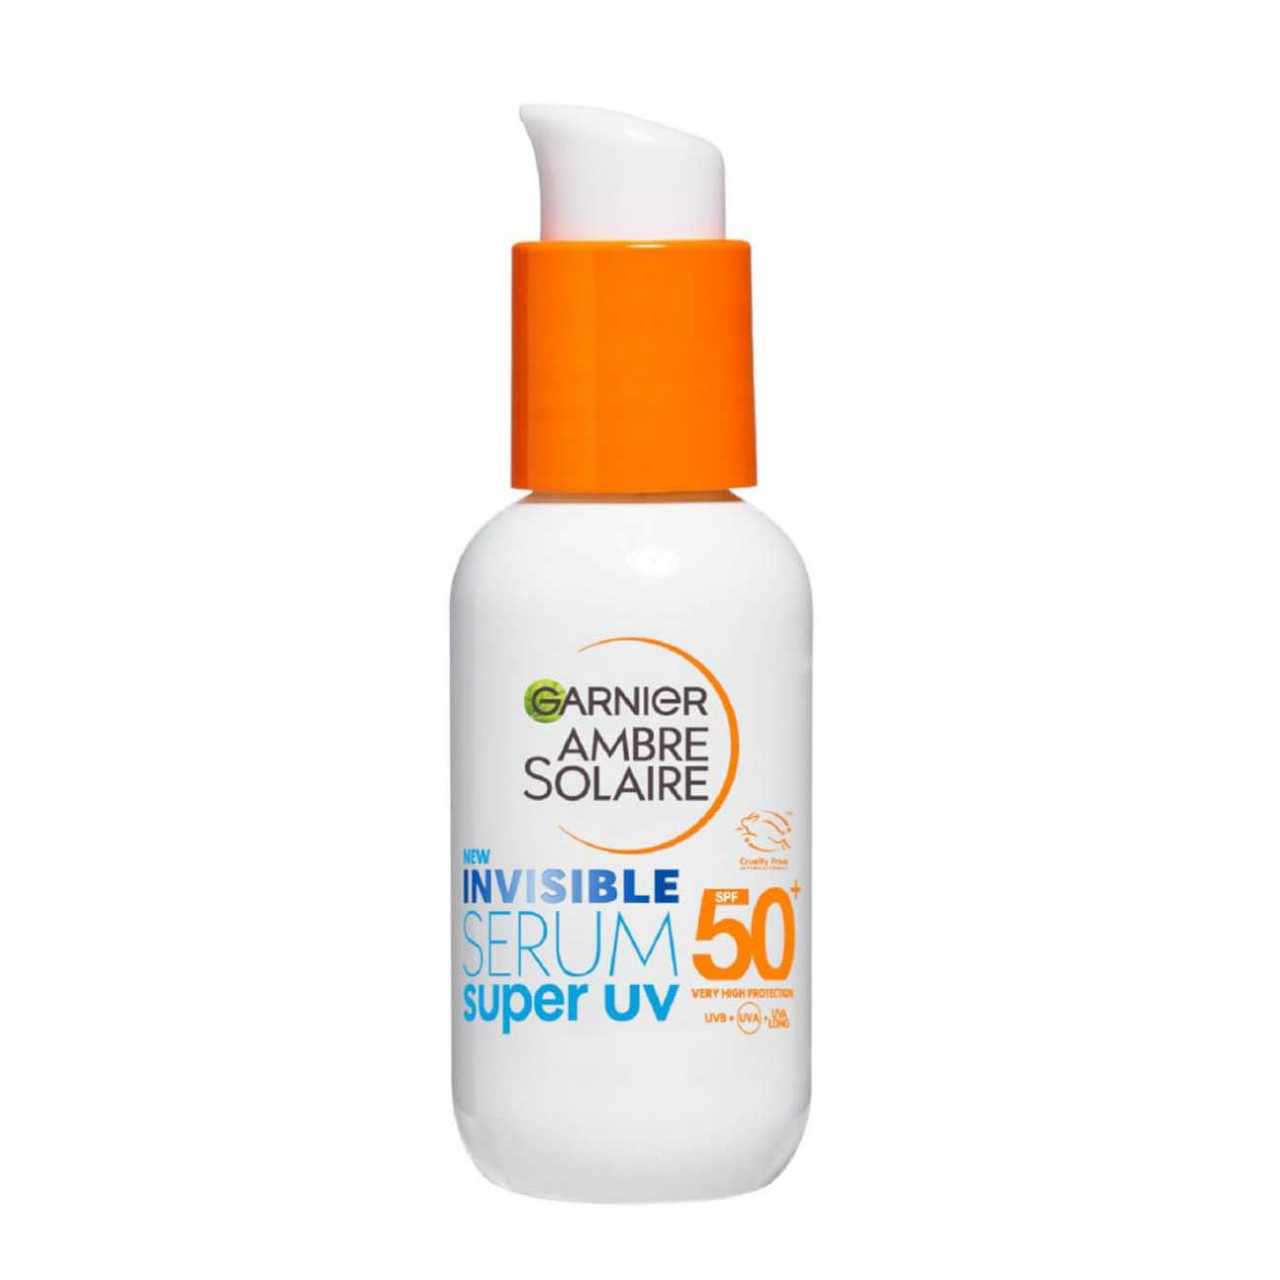 Serum Invisible Super UV SPF 50+ de Garnier